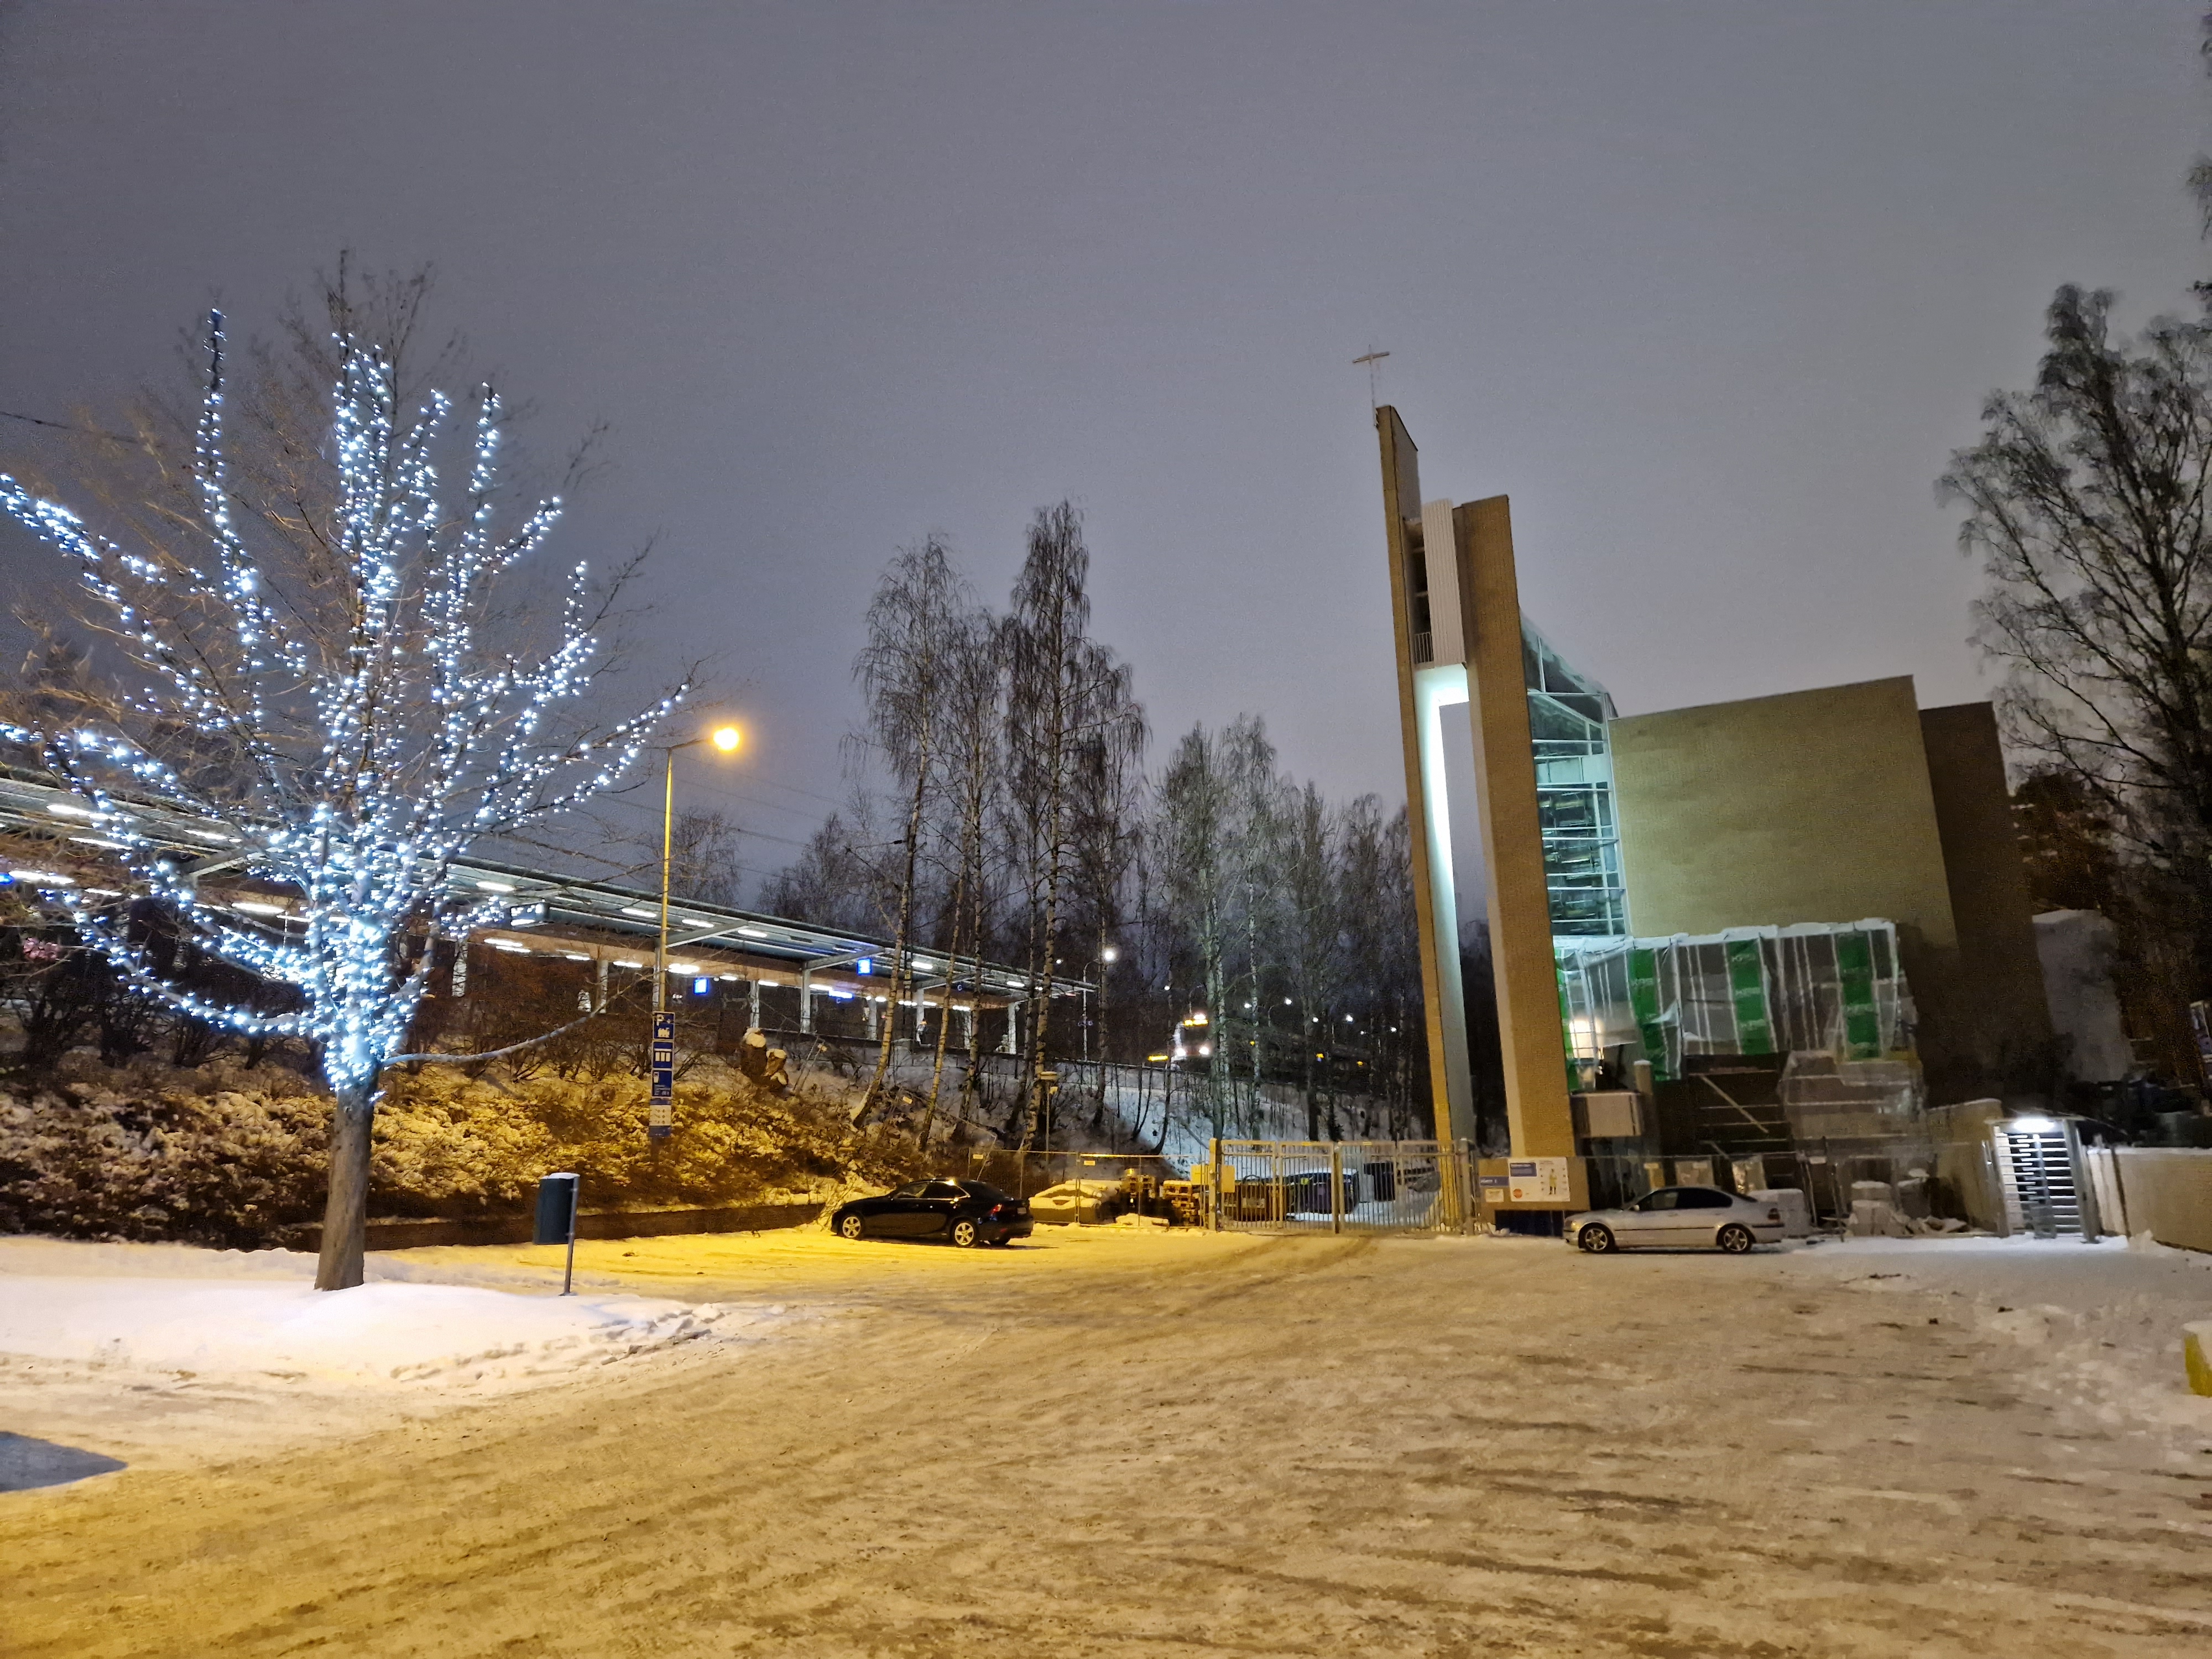 Myyrmäen kirkko talvi-iltana, taustalla junarata, kirkon vieressä valaistu puu